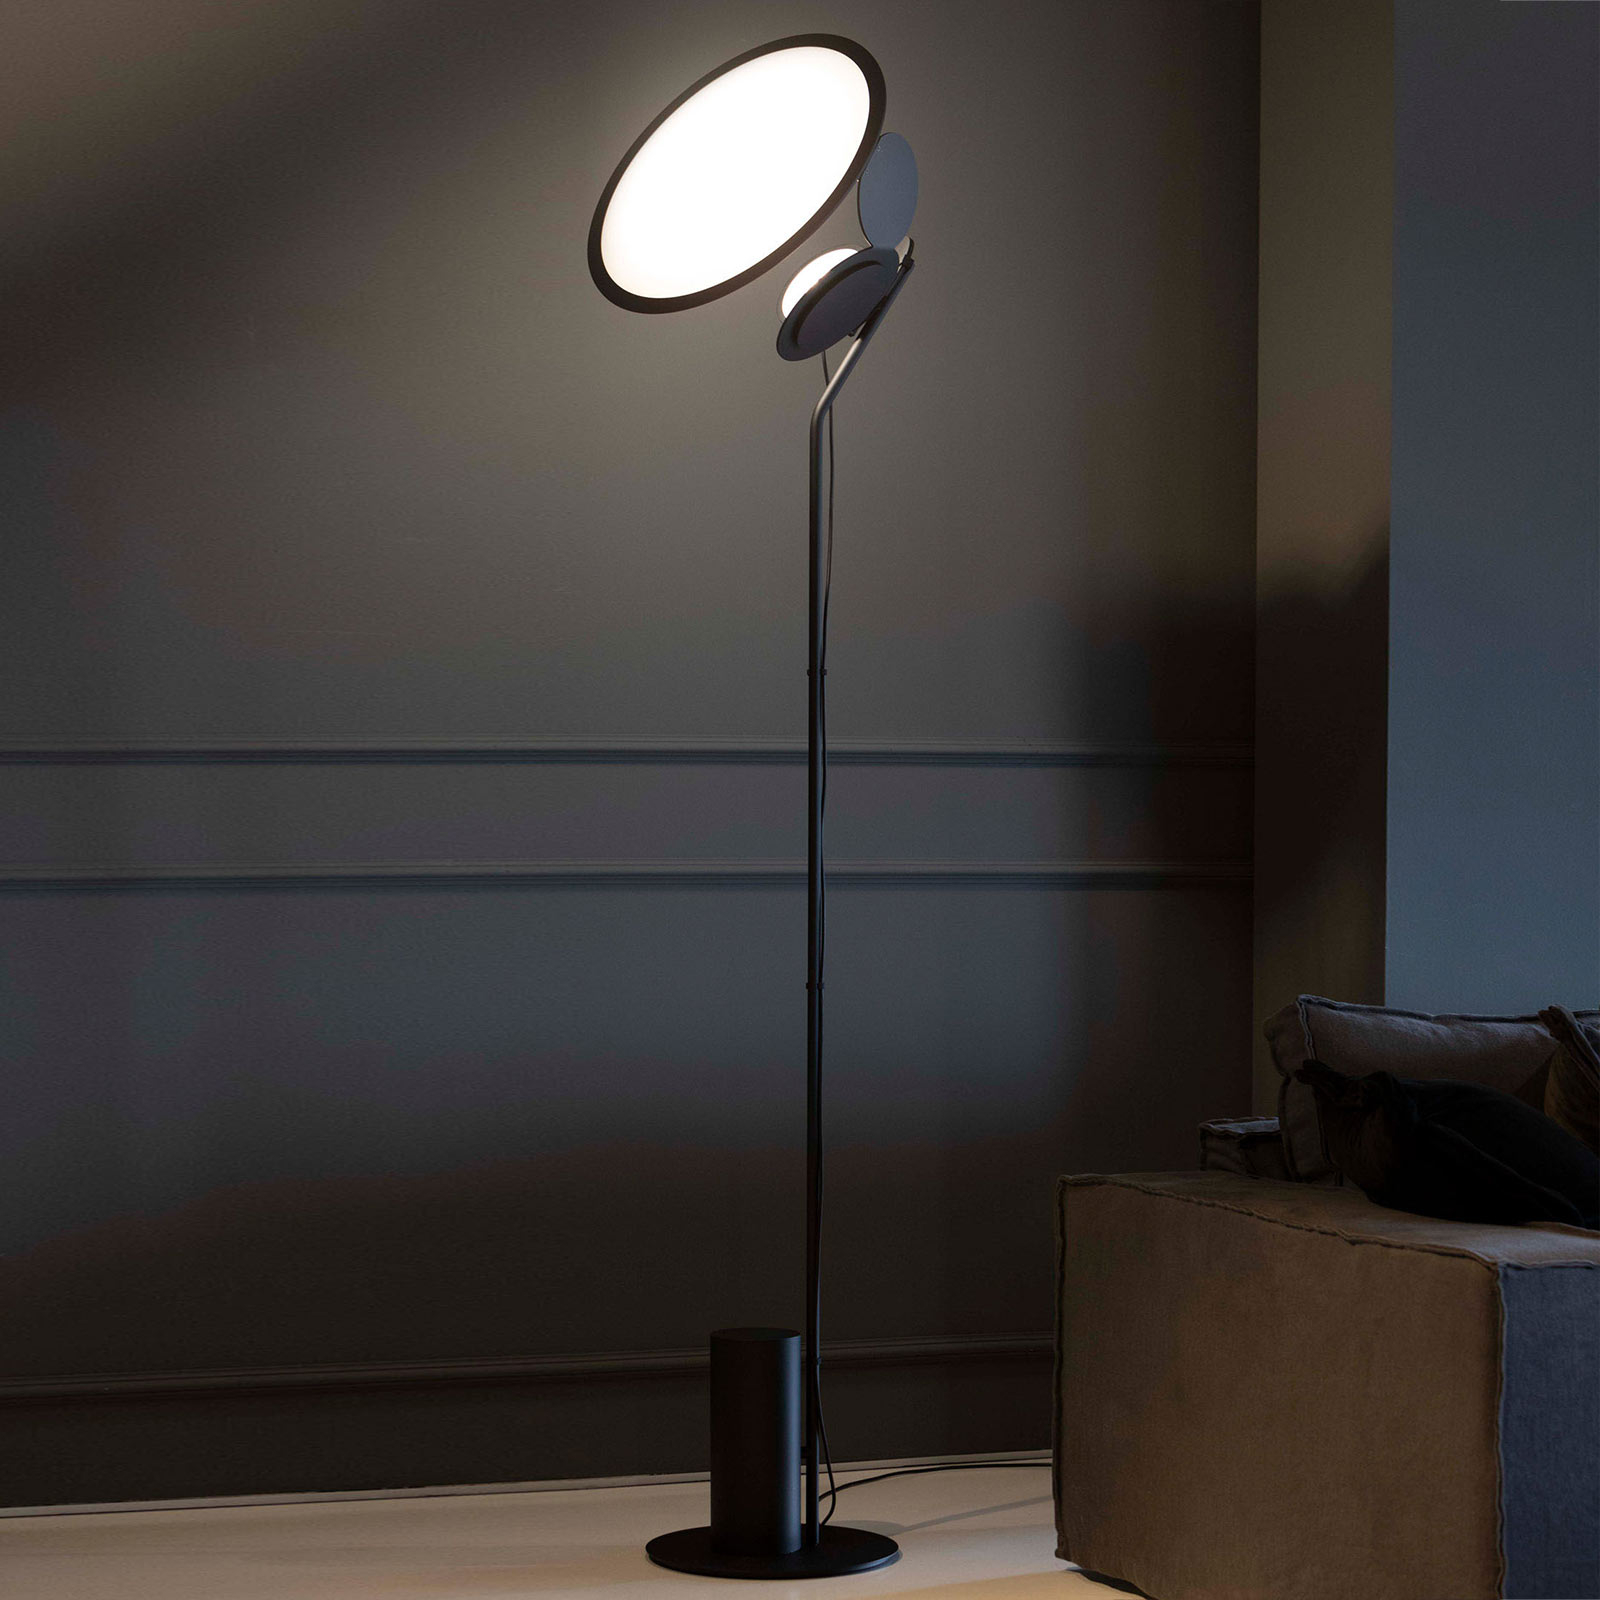 Axolight Cut designer LED floor lamp